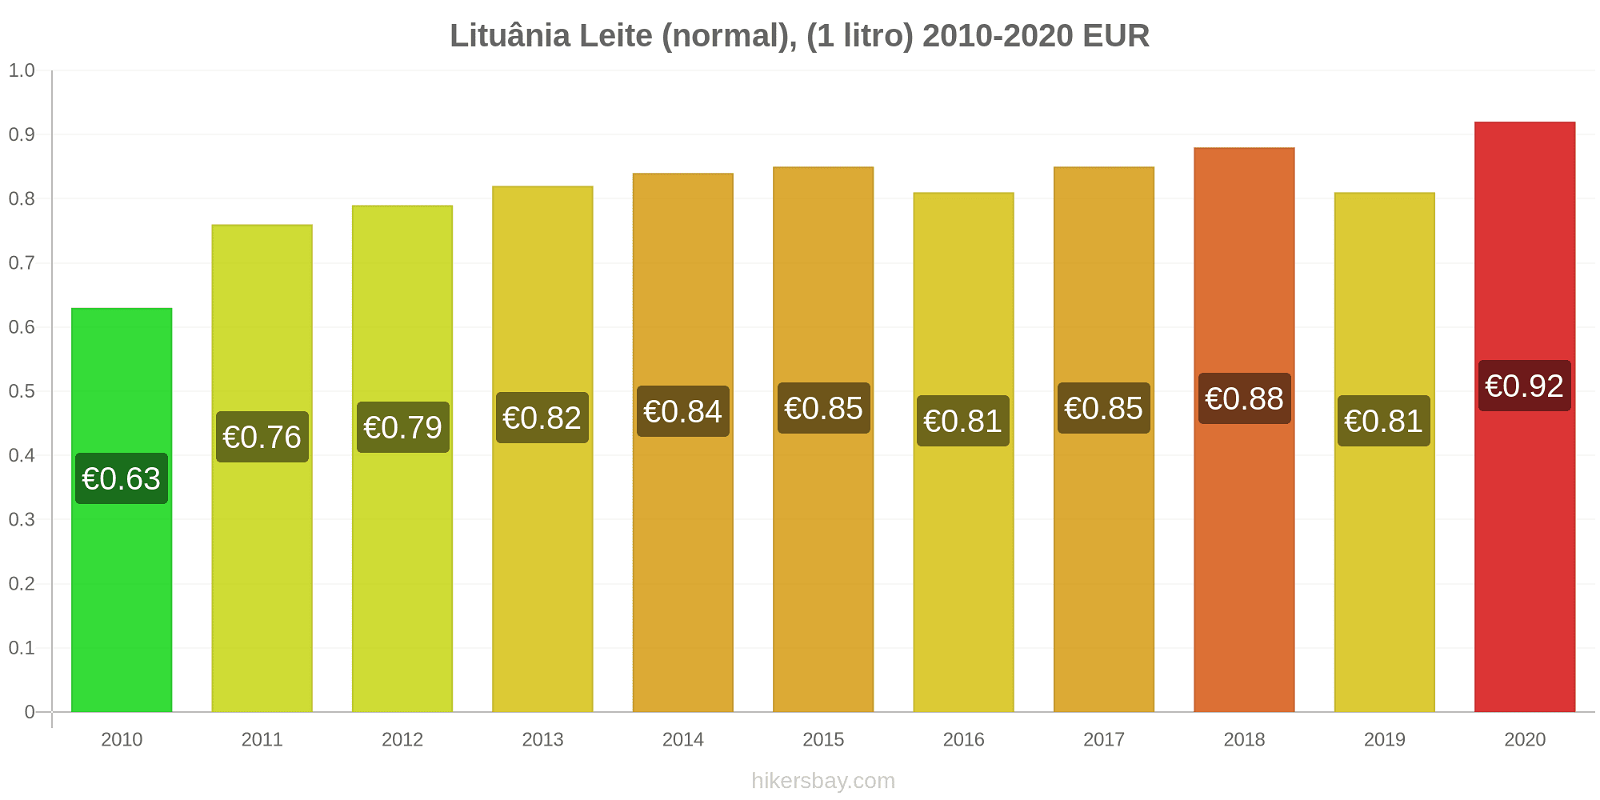 Lituânia variação de preço (Regular), leite (1 litro) hikersbay.com